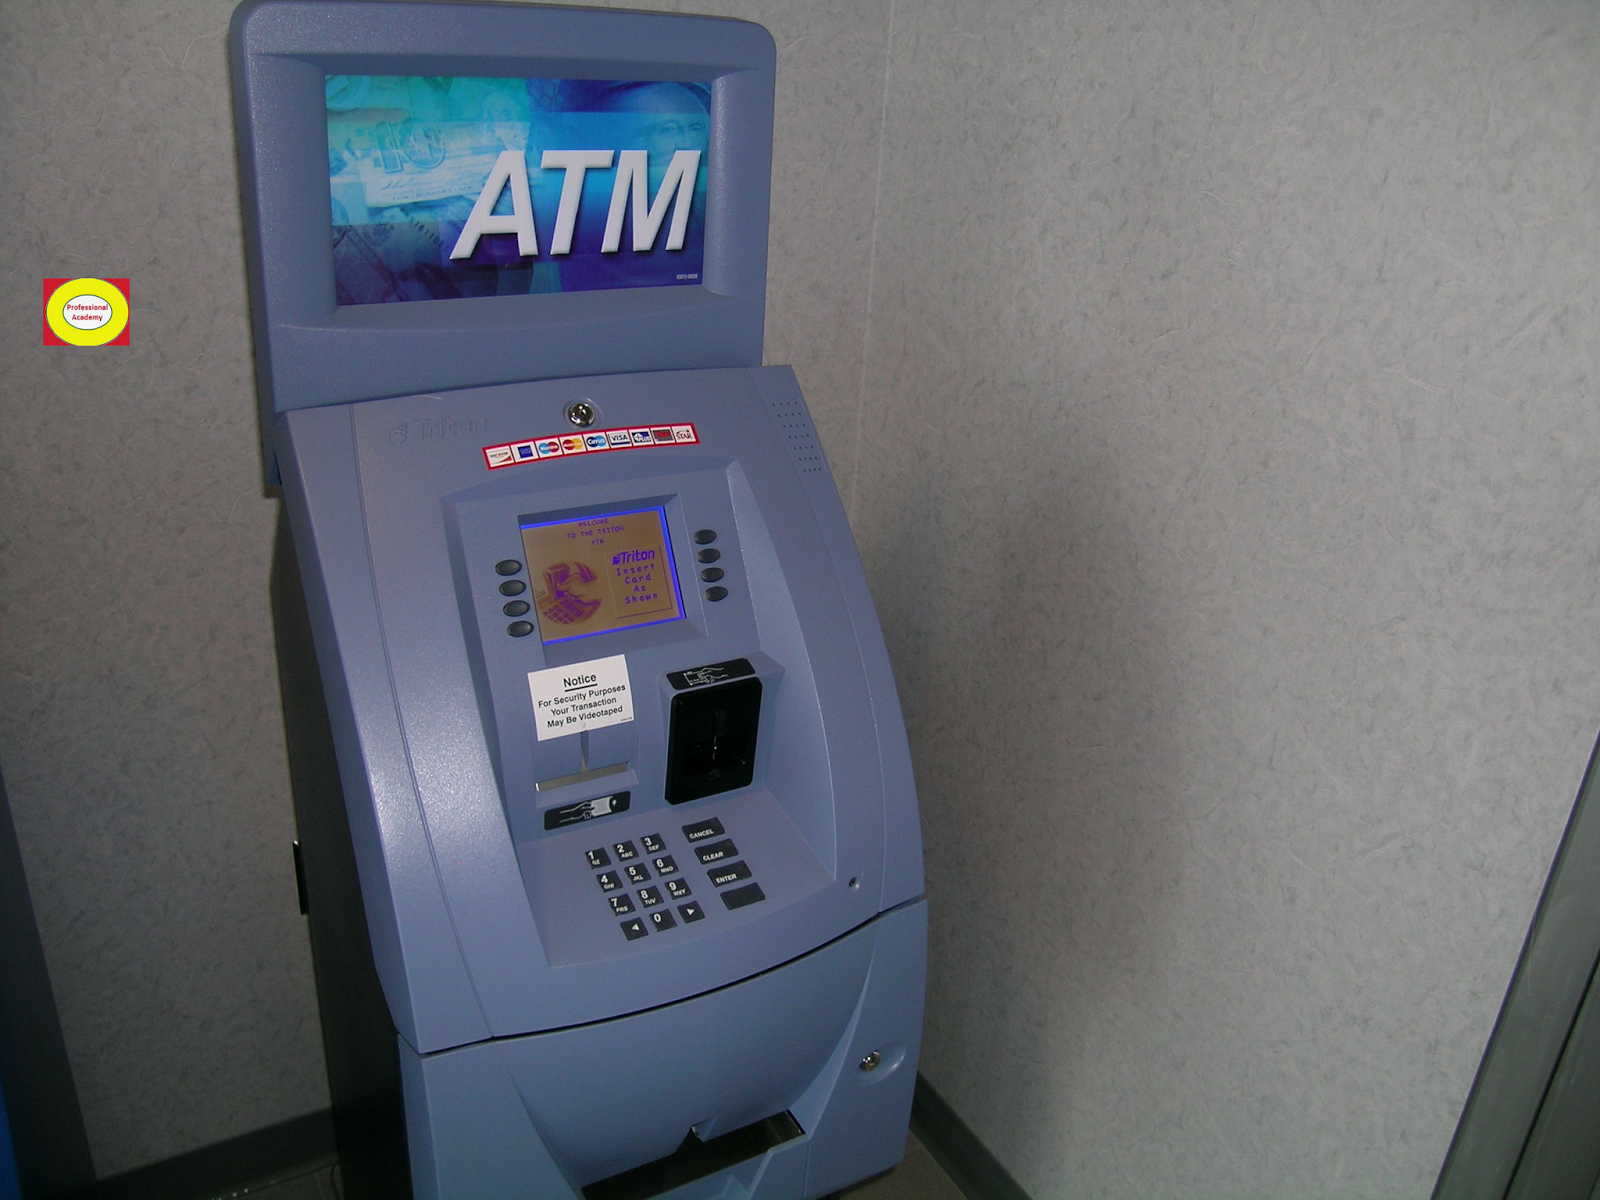 purpose of ATM